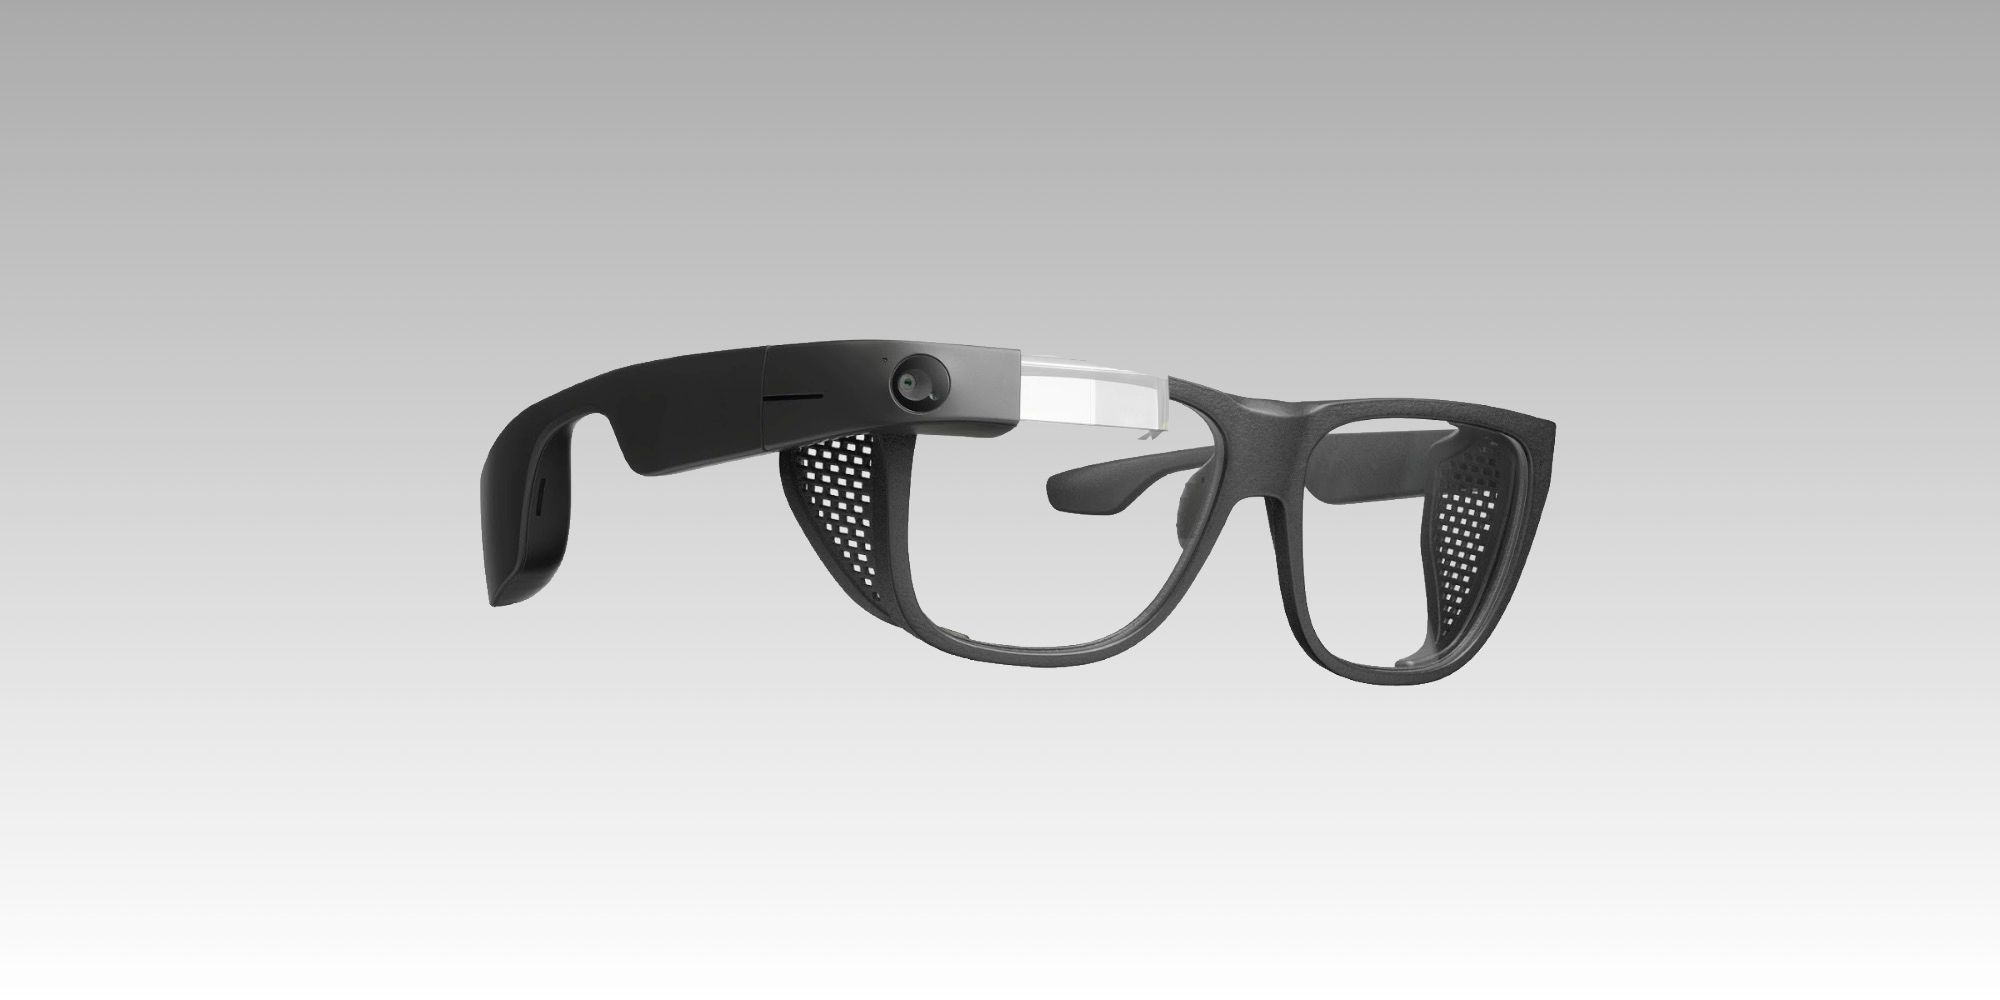 Et centralt værktøj, der spiller en vigtig rolle uberørt heks Google Glass: What Happened To The Futuristic Smart Glasses?